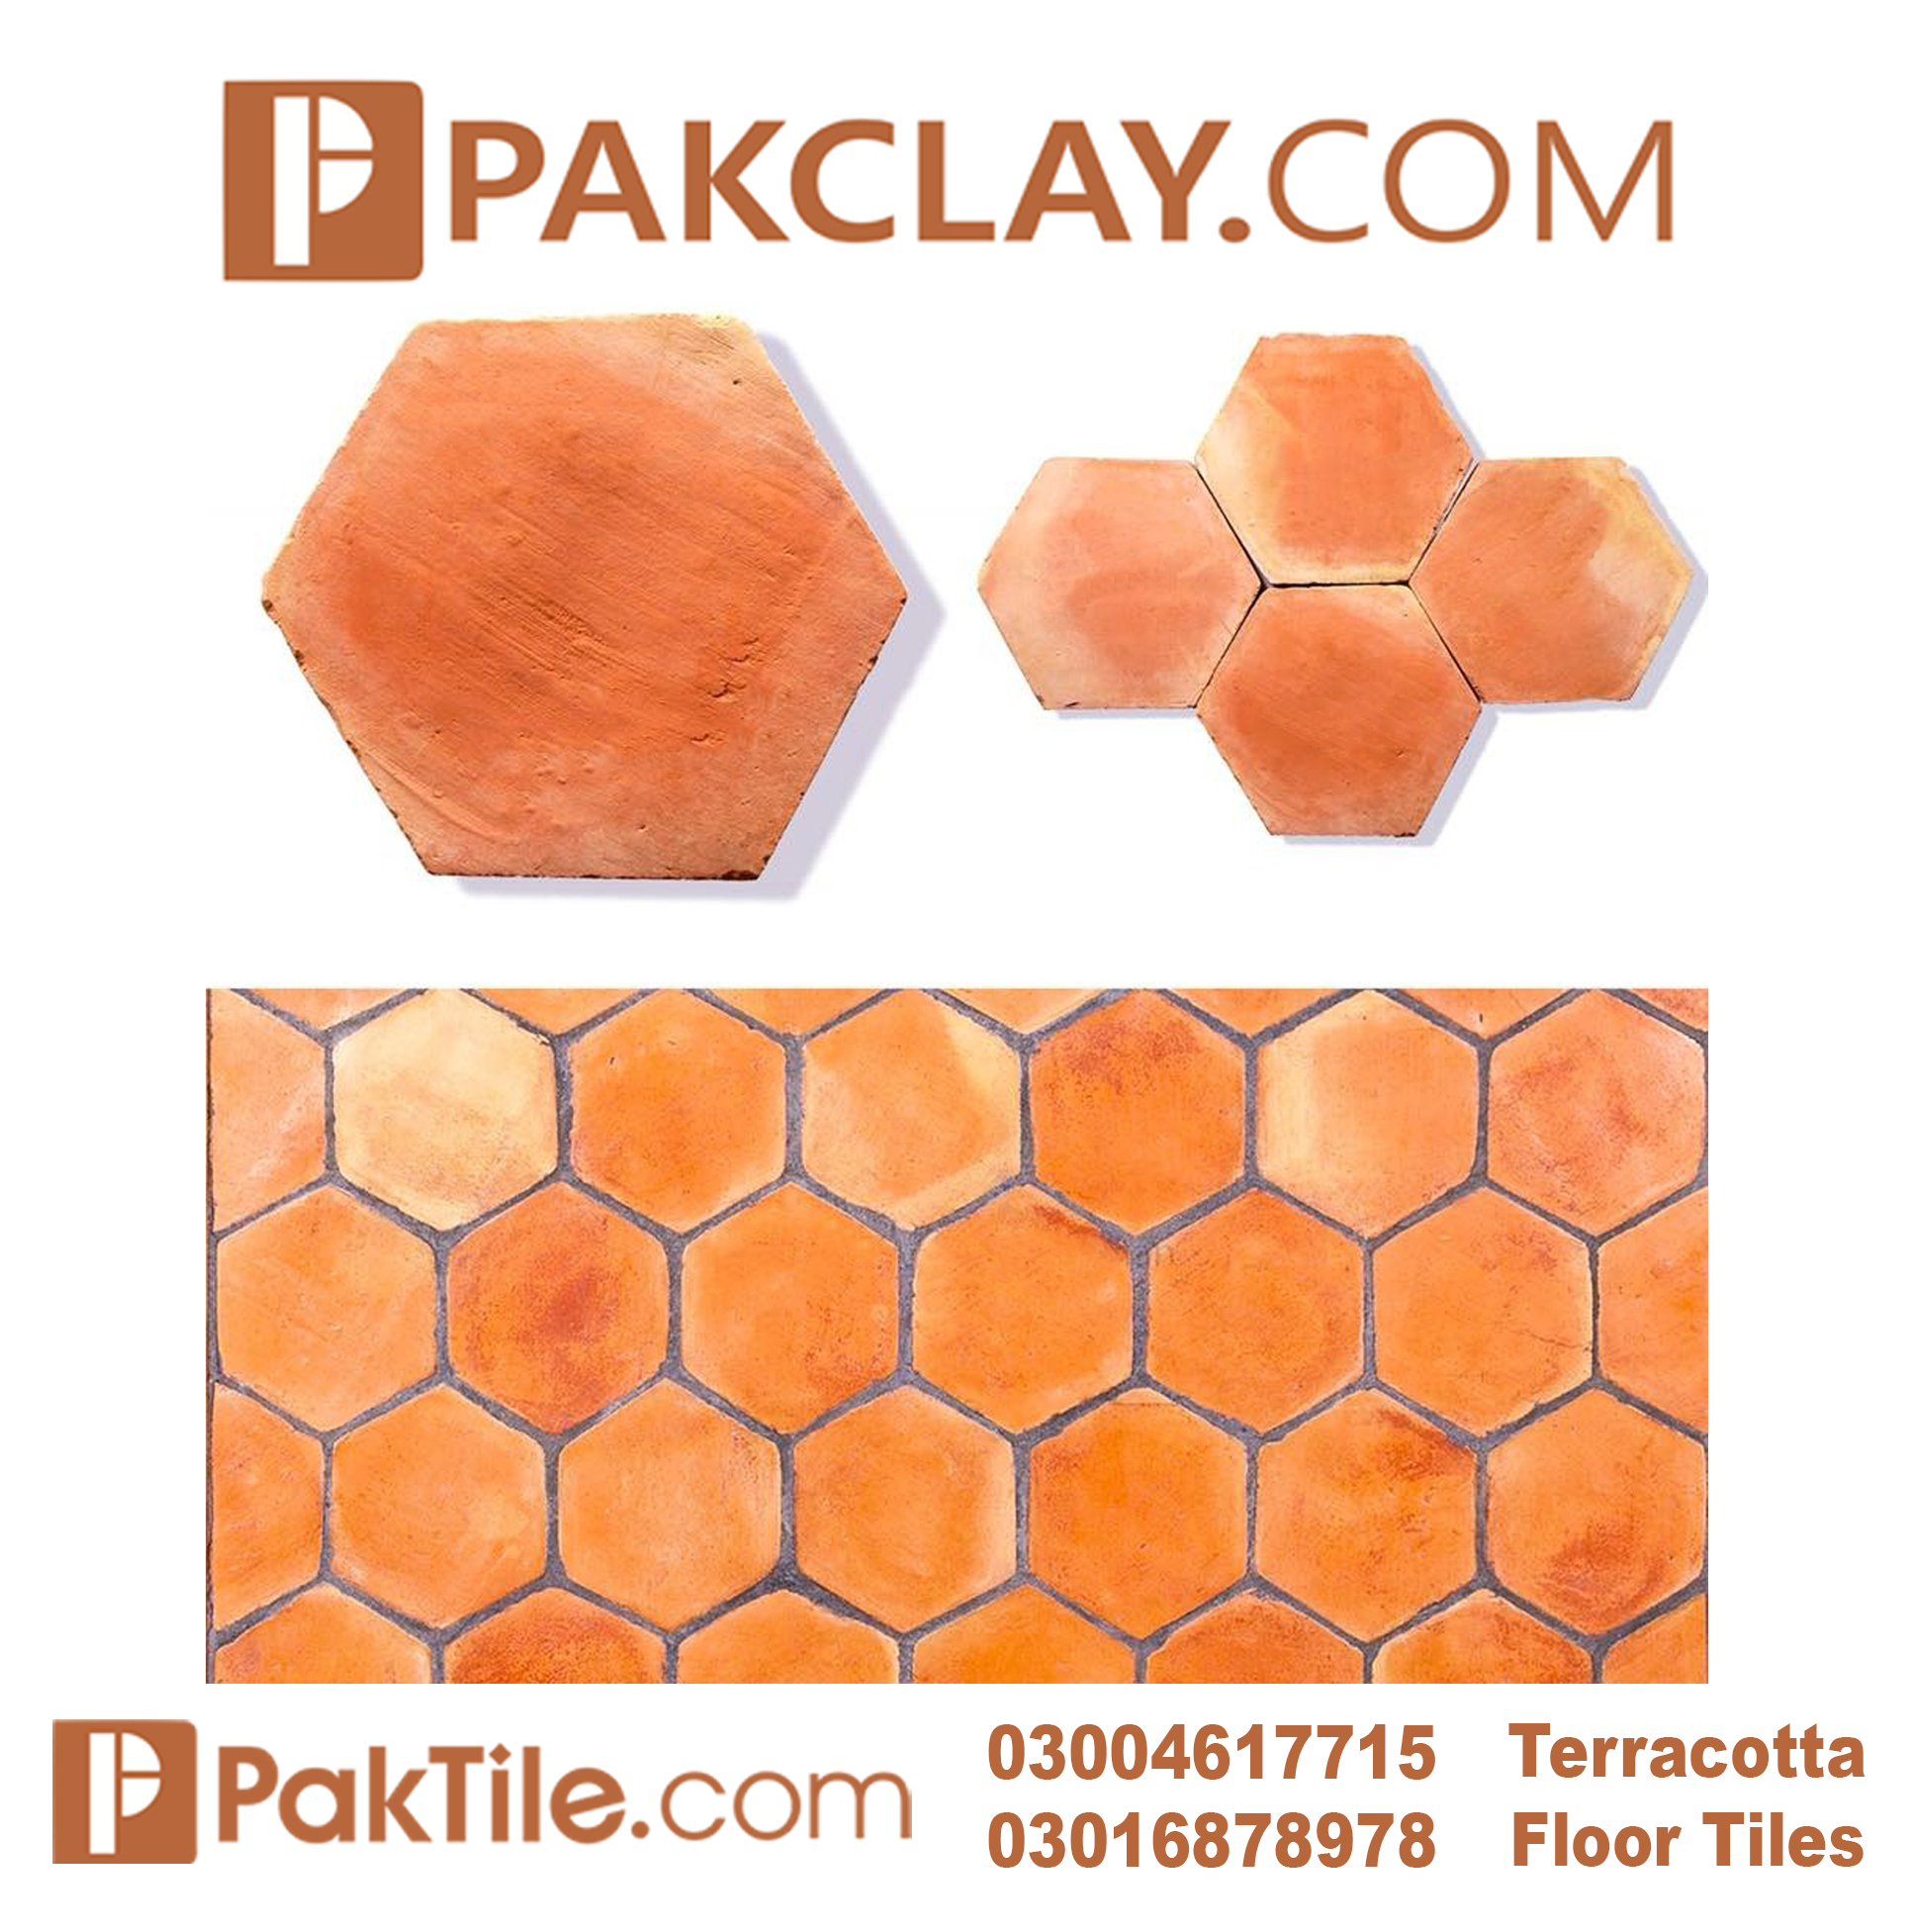 1 Terracotta Tiles Price in Karachi